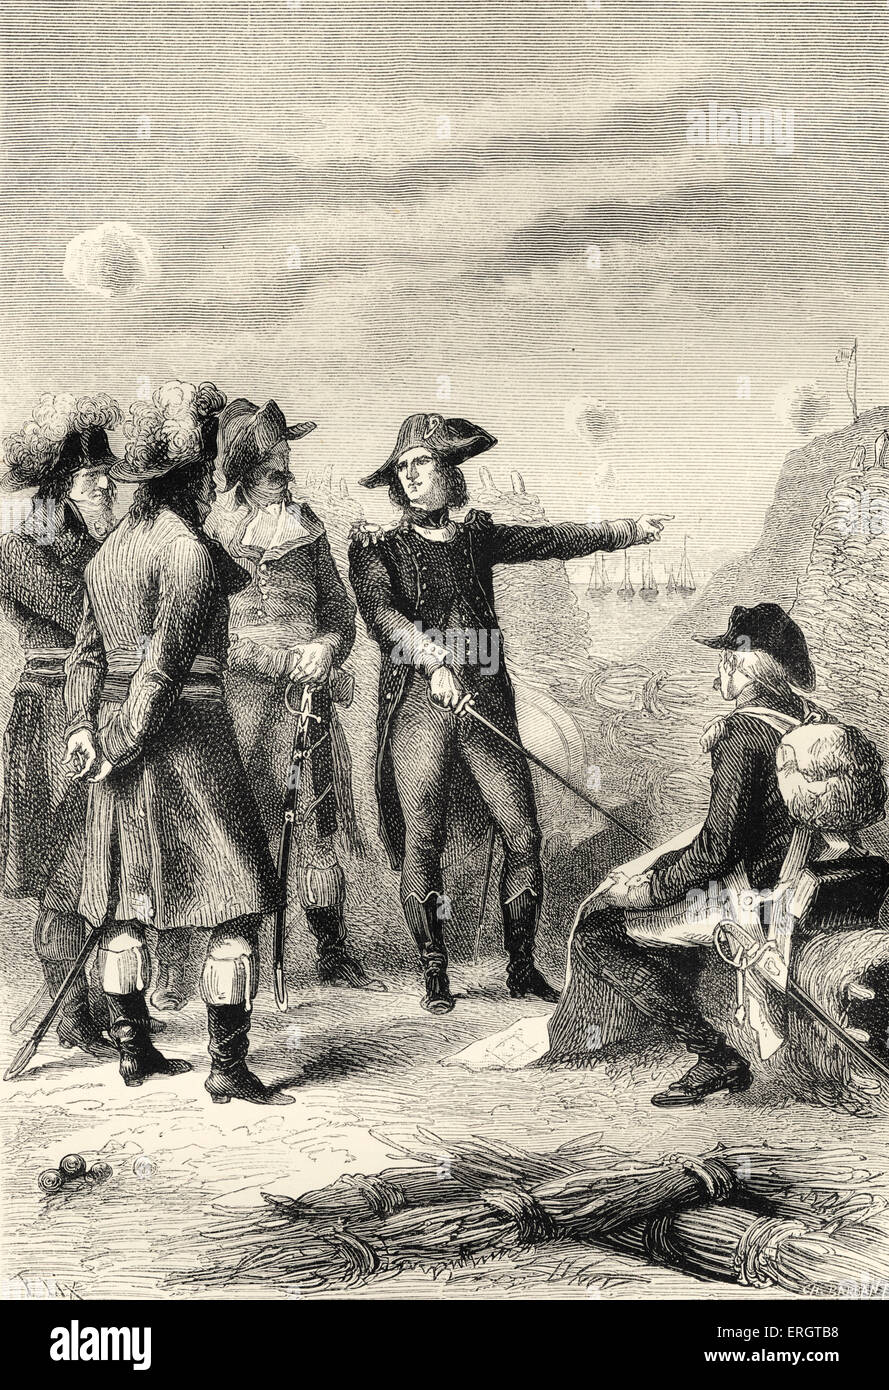 Napoleon bei der Belagerung von Toulon, Frankreich.  7 September bis 19. Dezember 1793. Napoleonische Kriege - Toulon war stark Stockfoto